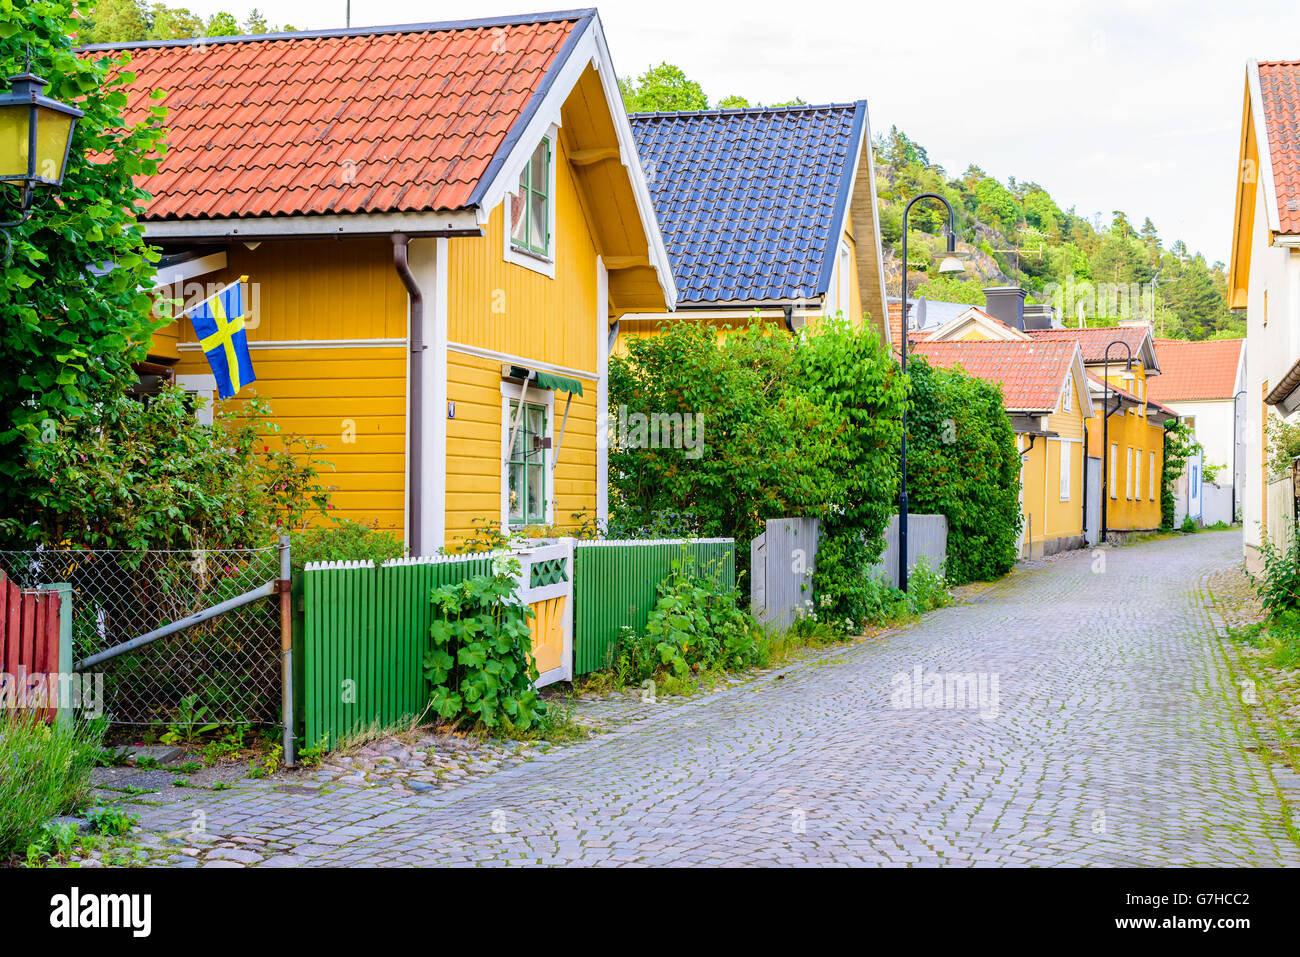 Soderkoping, Svezia - 19 Giugno 2016: bella strada stretta con i blocchi di granito come pavimentazione. In vecchio stile case lungo la strada Foto Stock